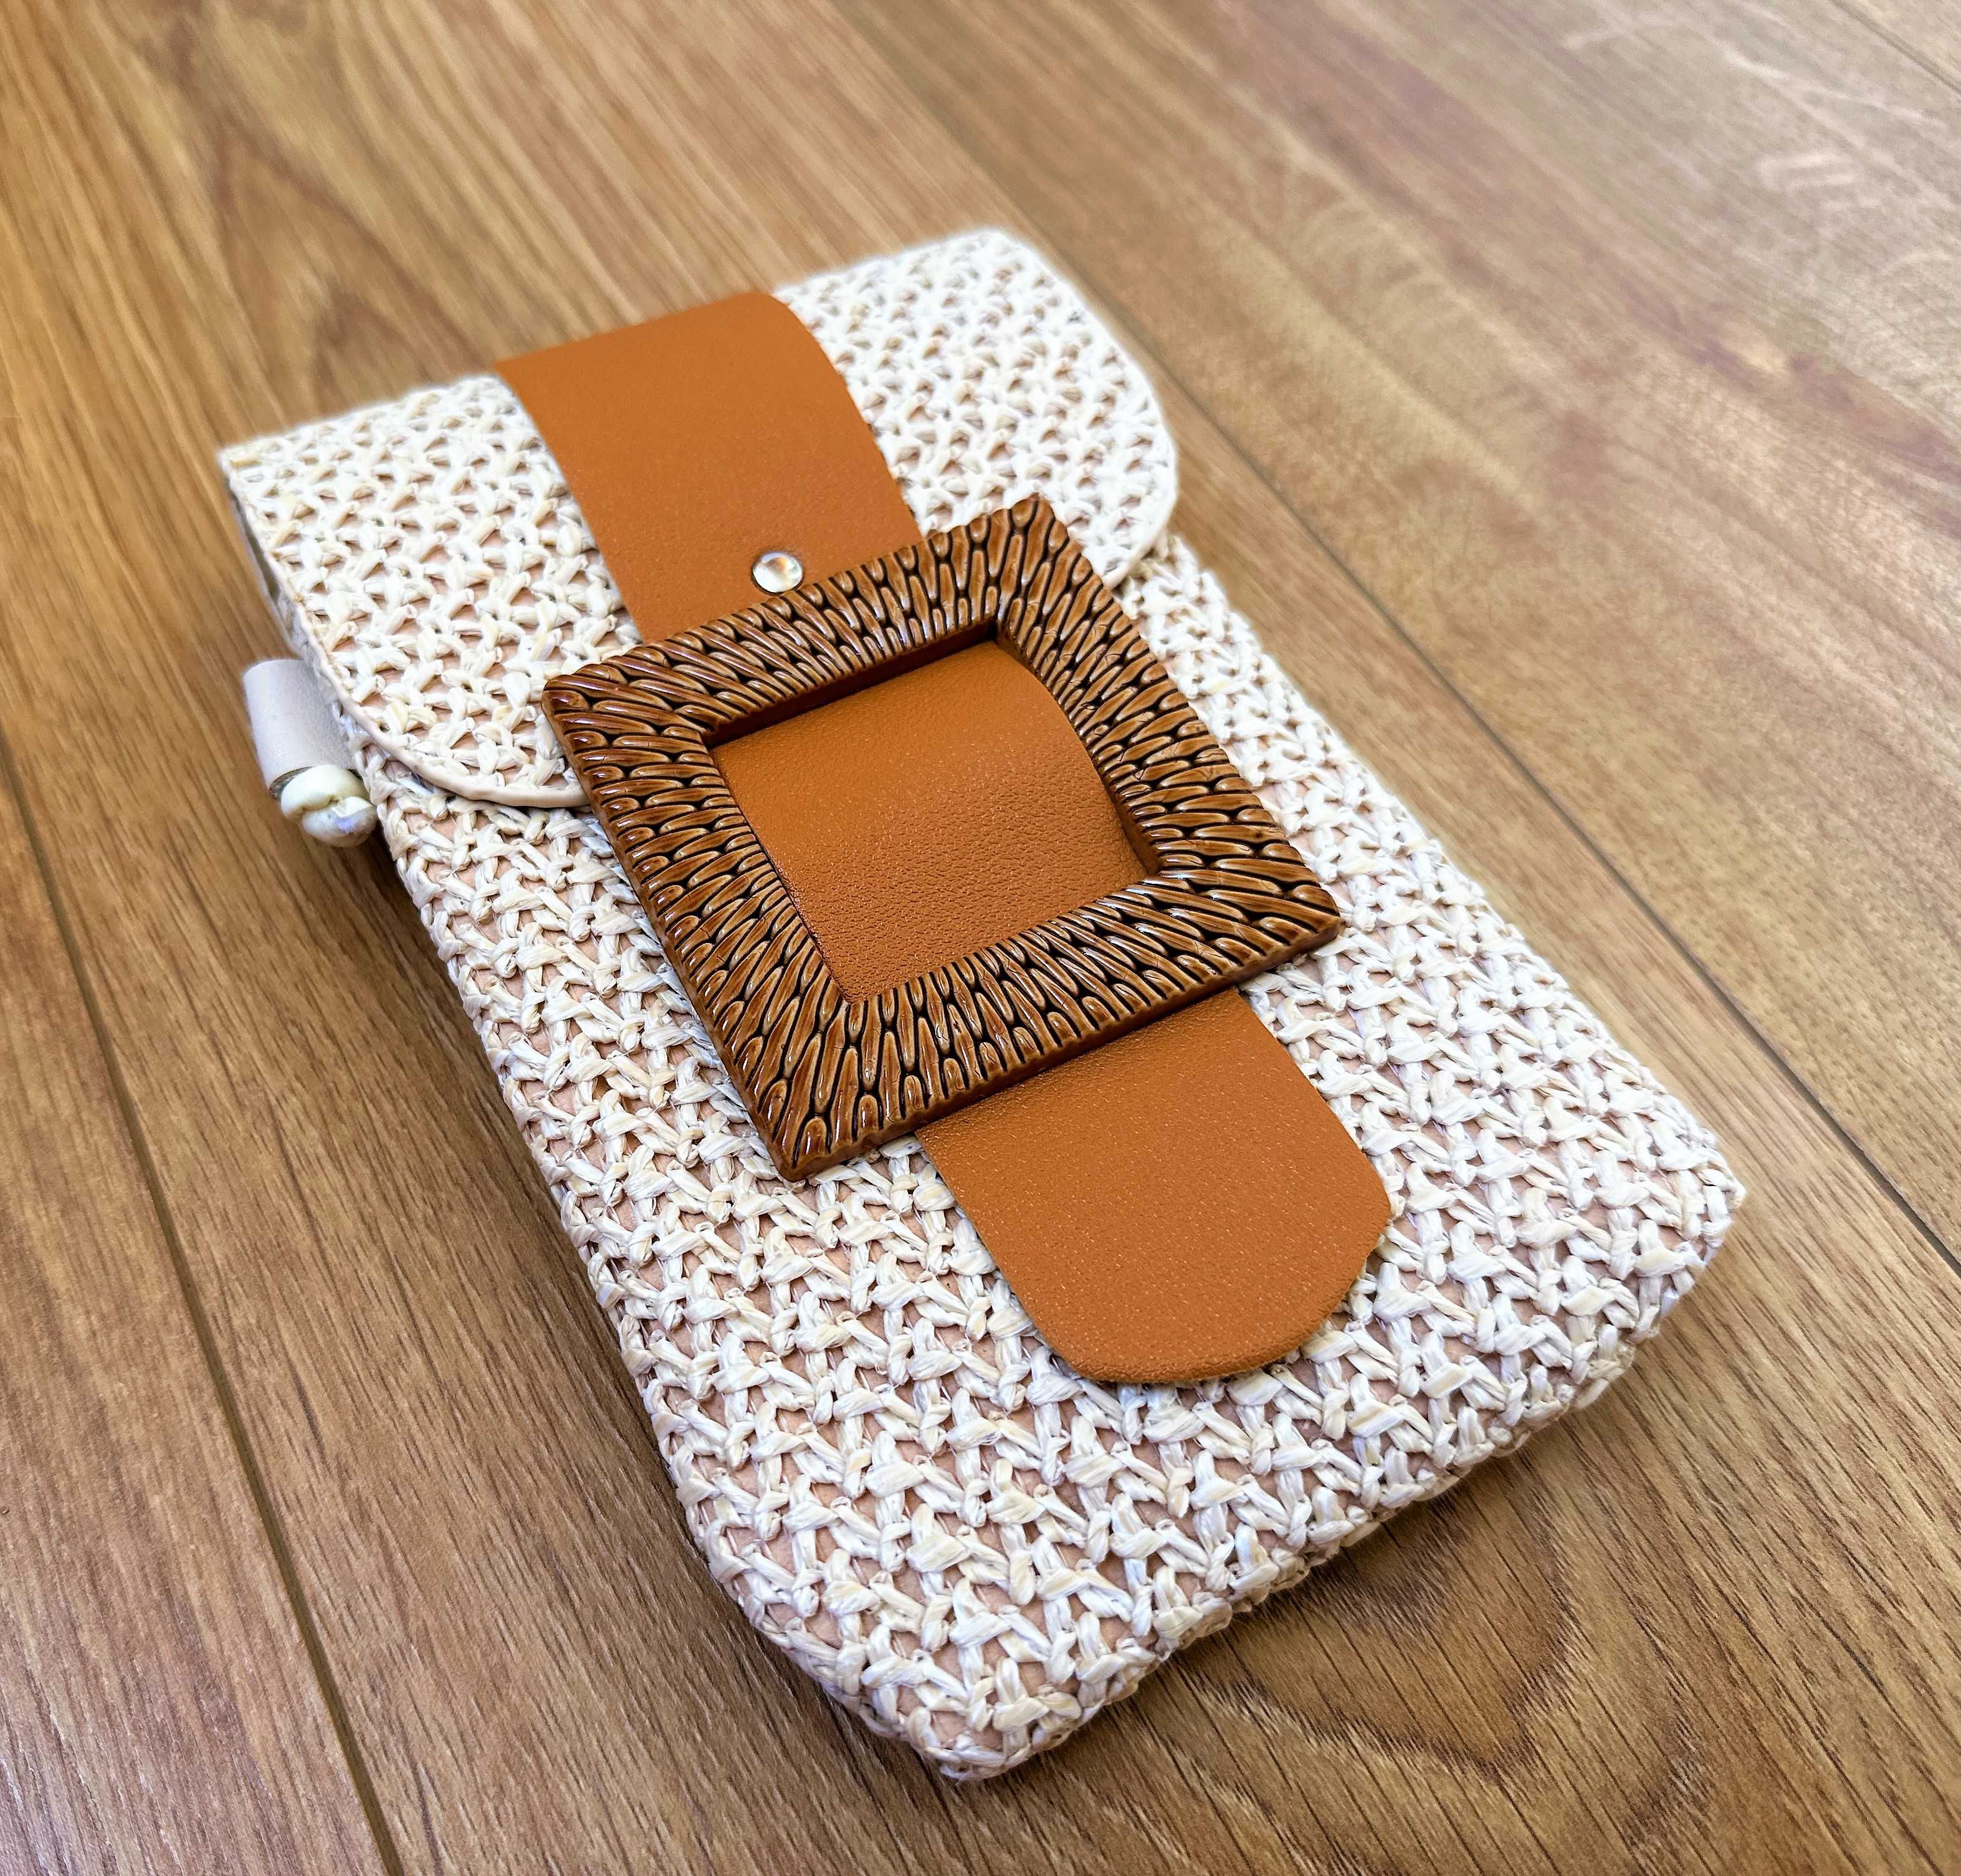 вязанная сумка клатч чехол для телефона Samsung iPhone Xiaomi